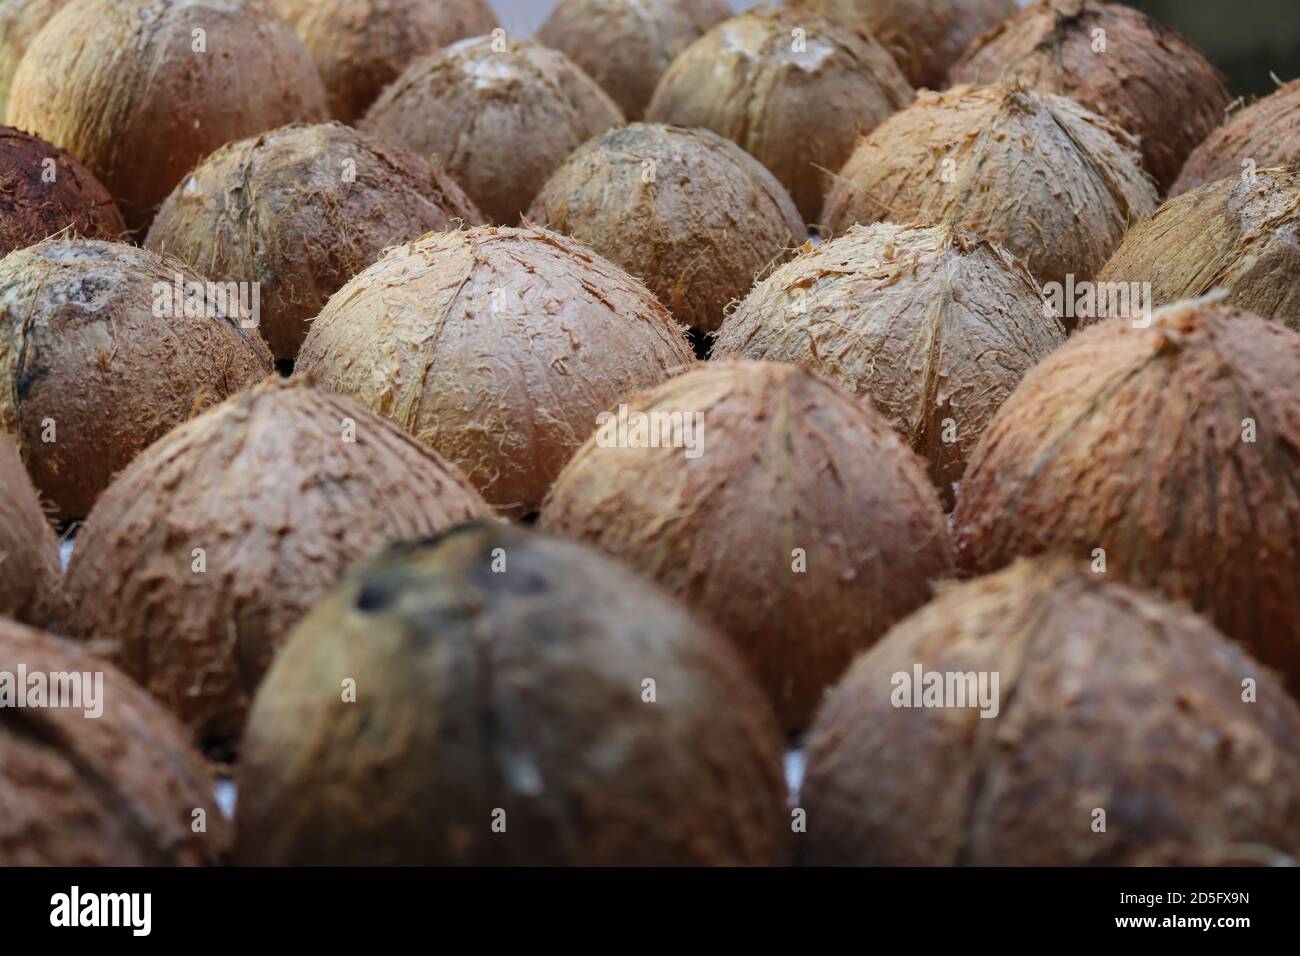 Queste sono conchiglie di cocco. Dopo aver raccolto la diffusione di cocco possiamo vedere queste conchiglie. Queste conchiglie sono pronte per la maggior parte degli articoli creativi fatti a mano. Foto Stock